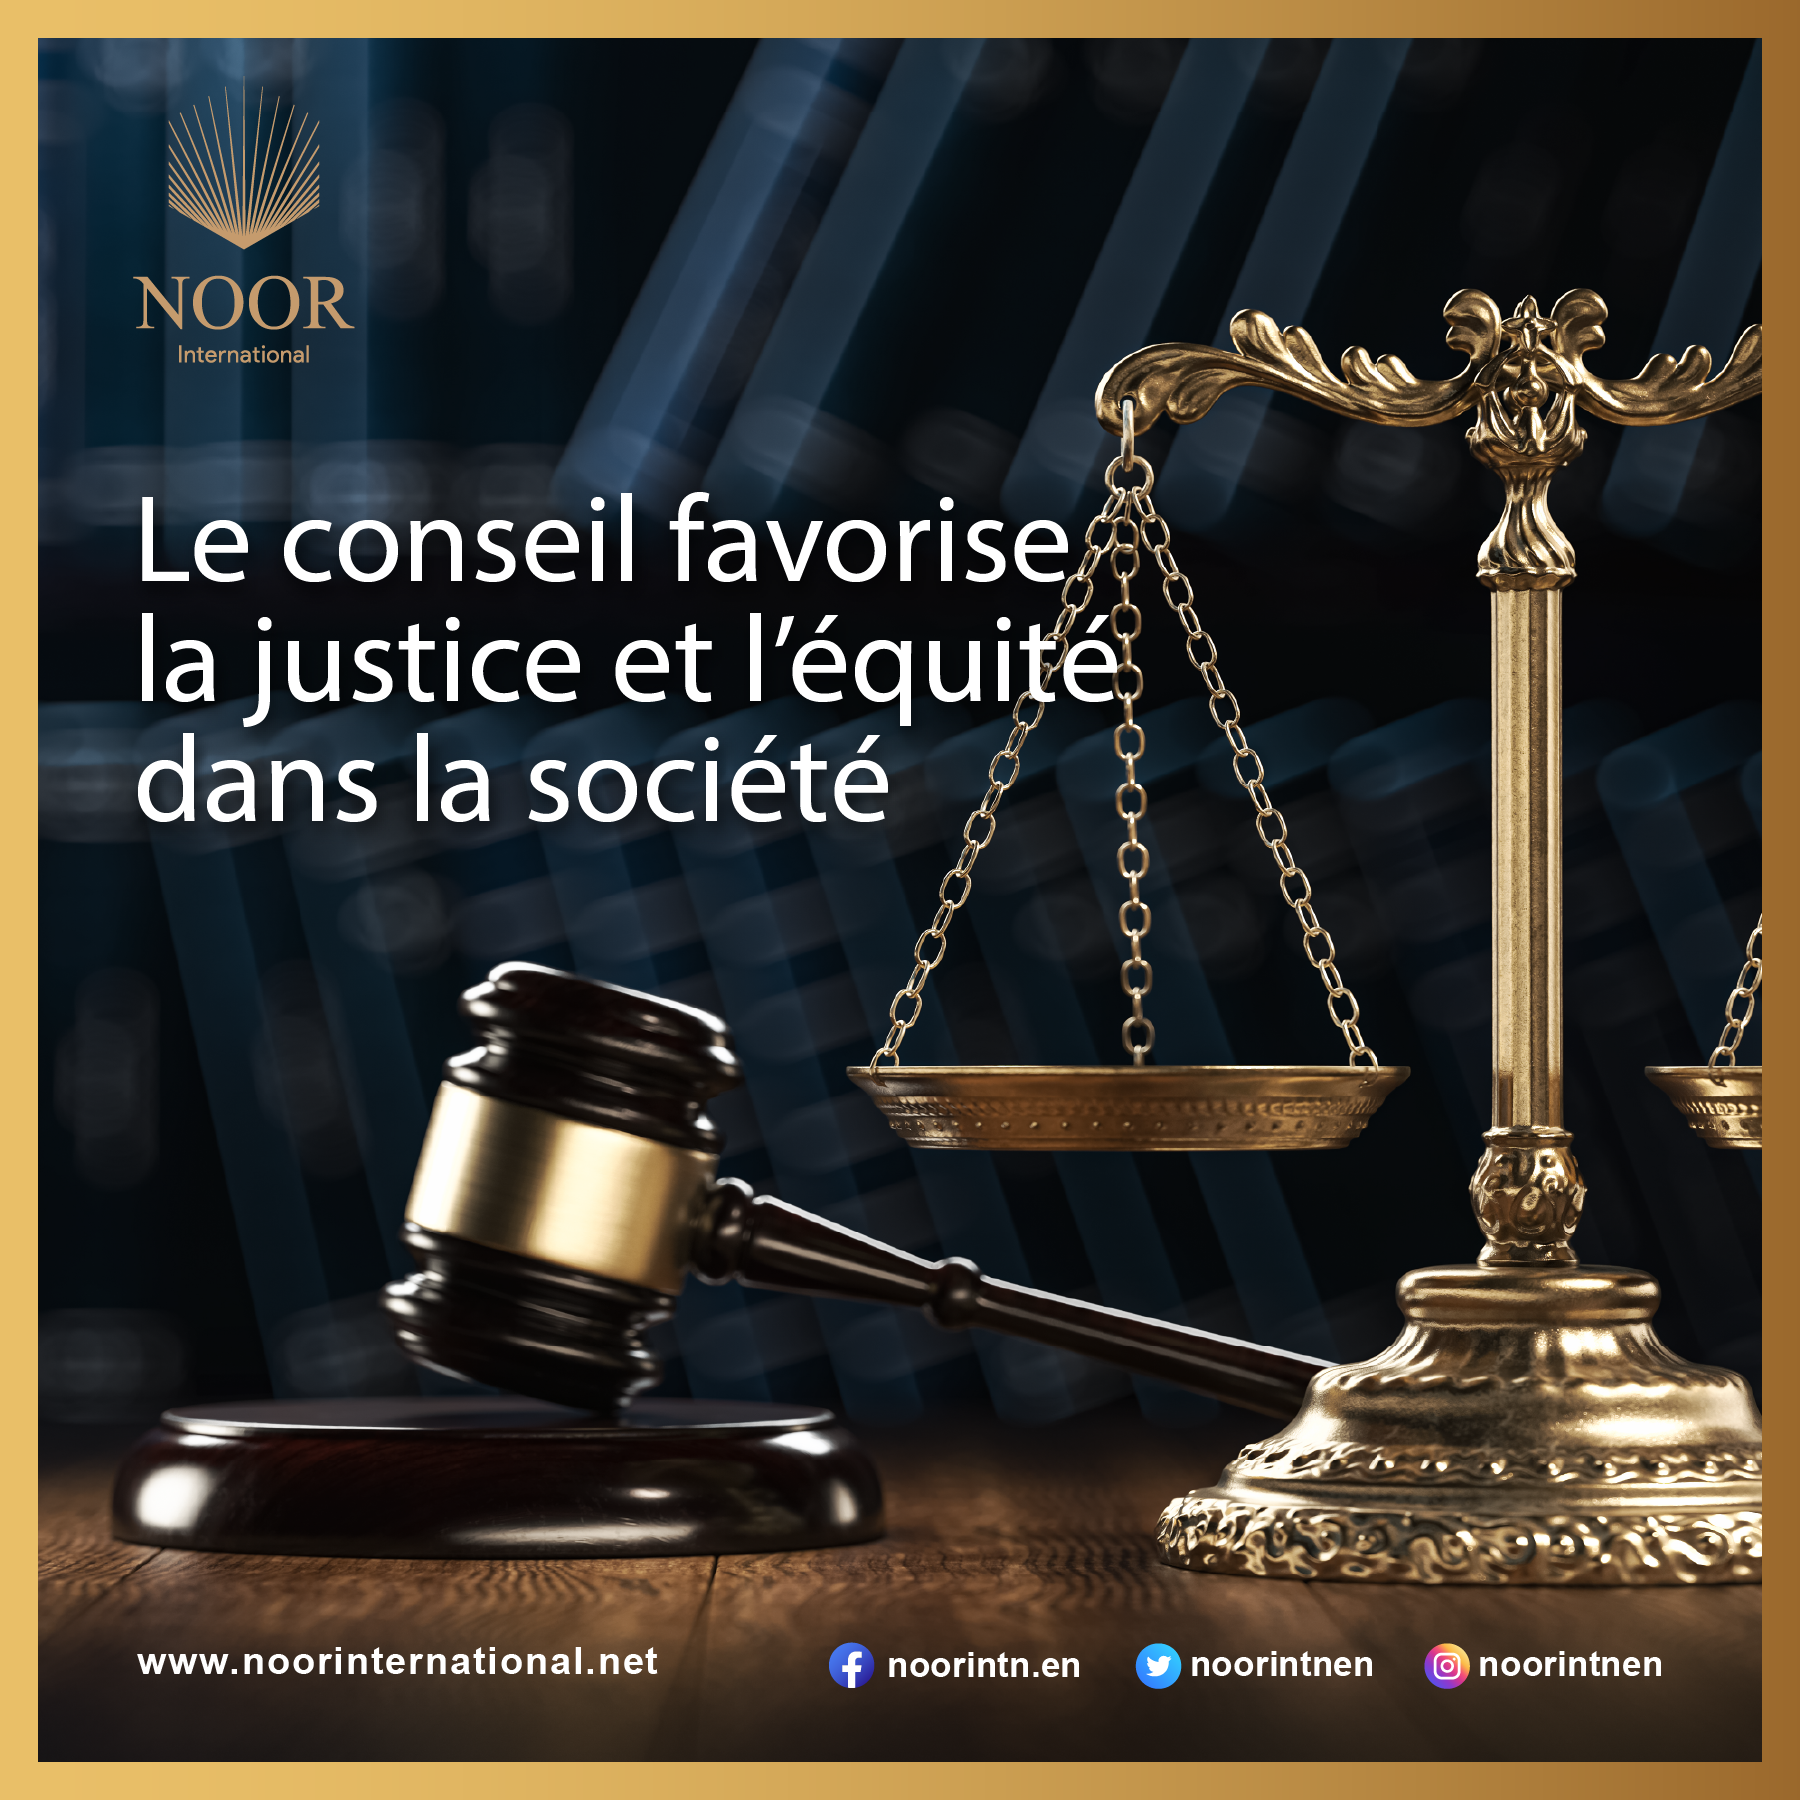 El consejo promueve la justicia y la equidad en la sociedad